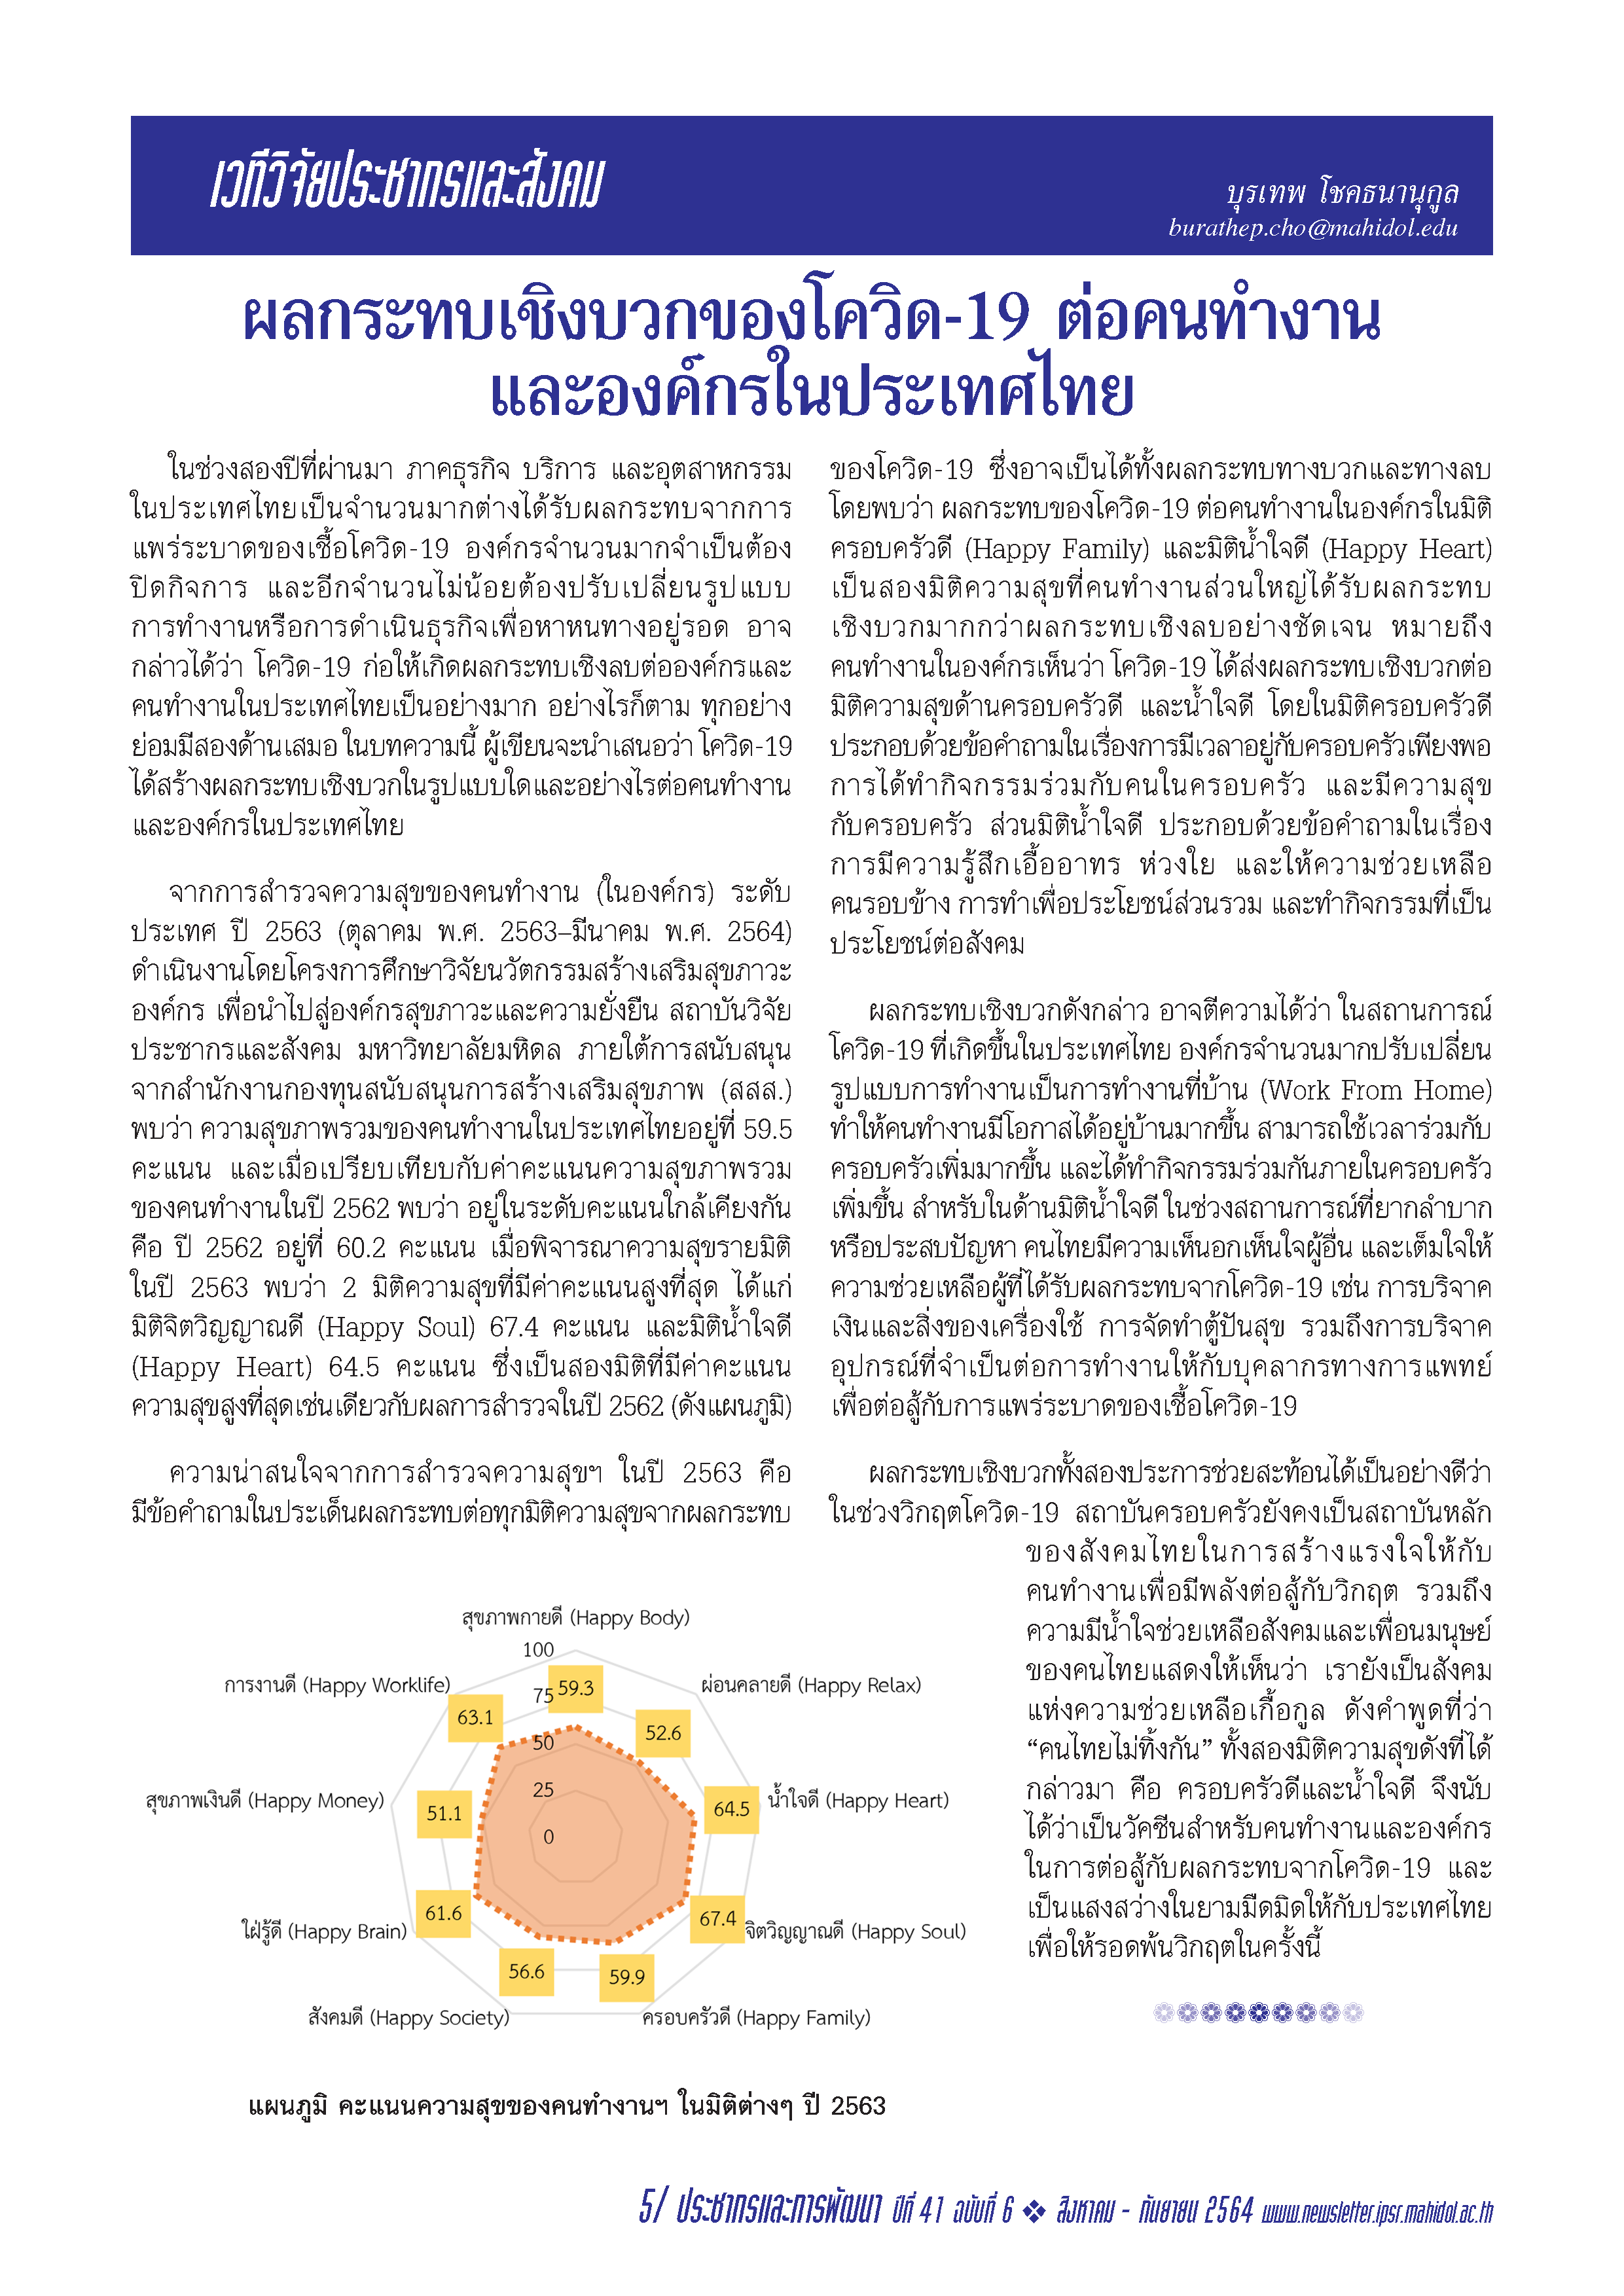 บทความสั้น เรื่อง ผลกระทบเชิงบวกของโควิด-19 ต่อคนทำงานและองค์กรในประเทศไทย 